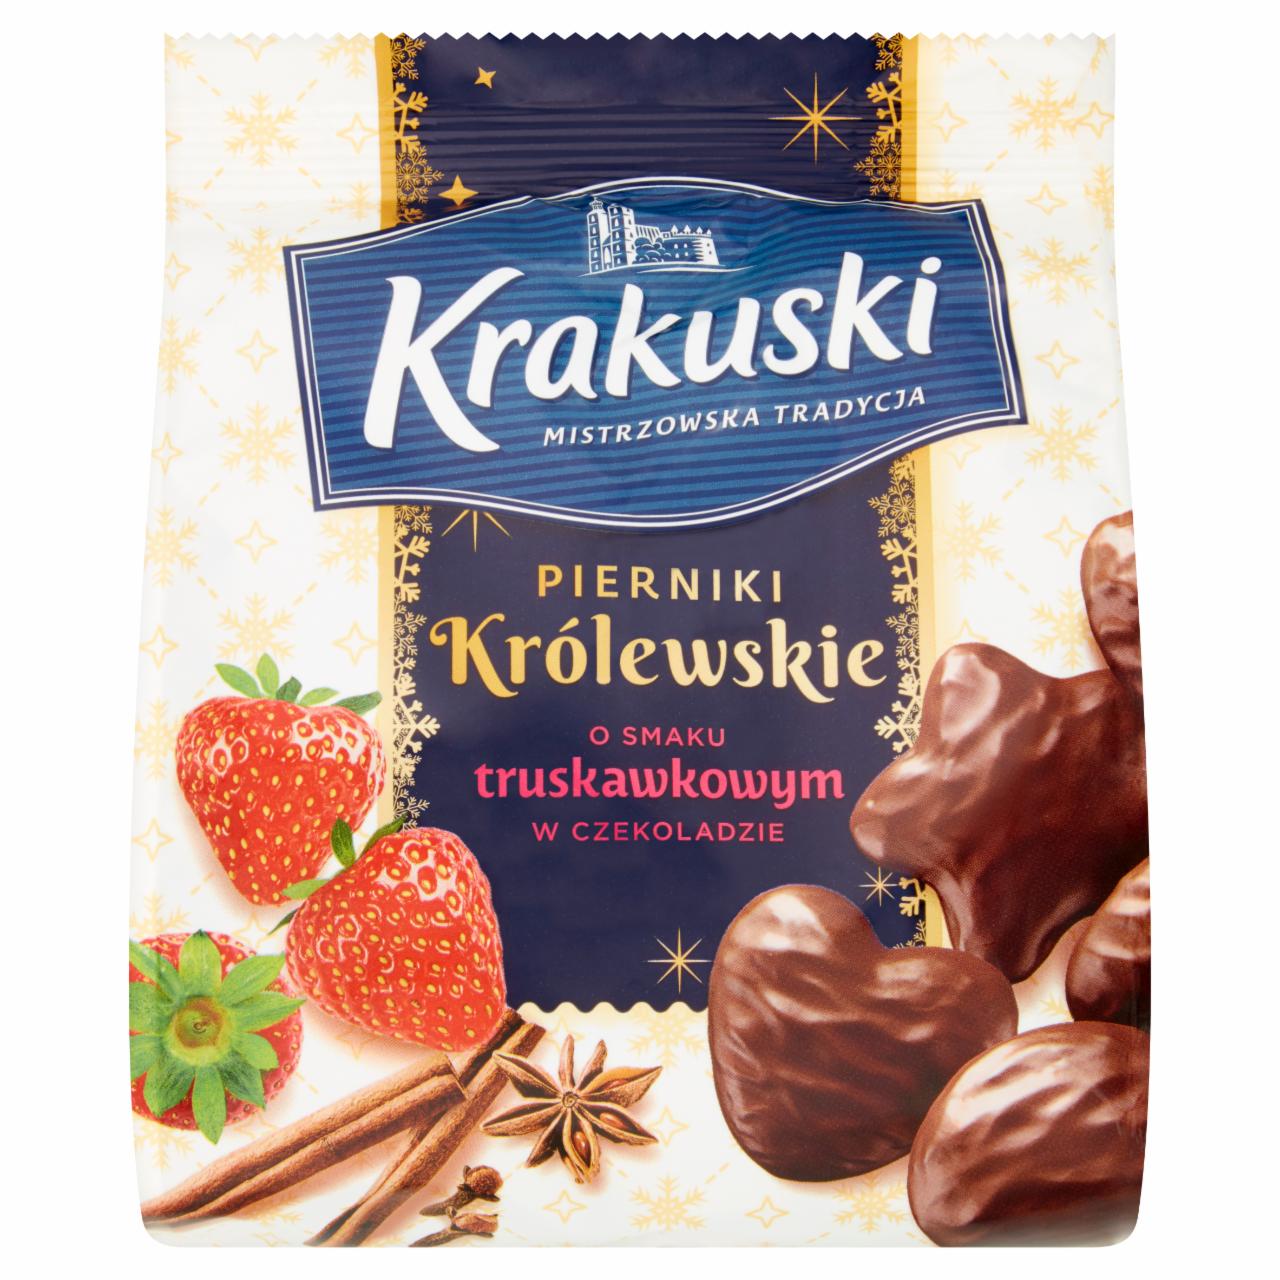 Zdjęcia - Krakuski Pierniki Królewskie o smaku truskawkowym w czekoladzie 150 g